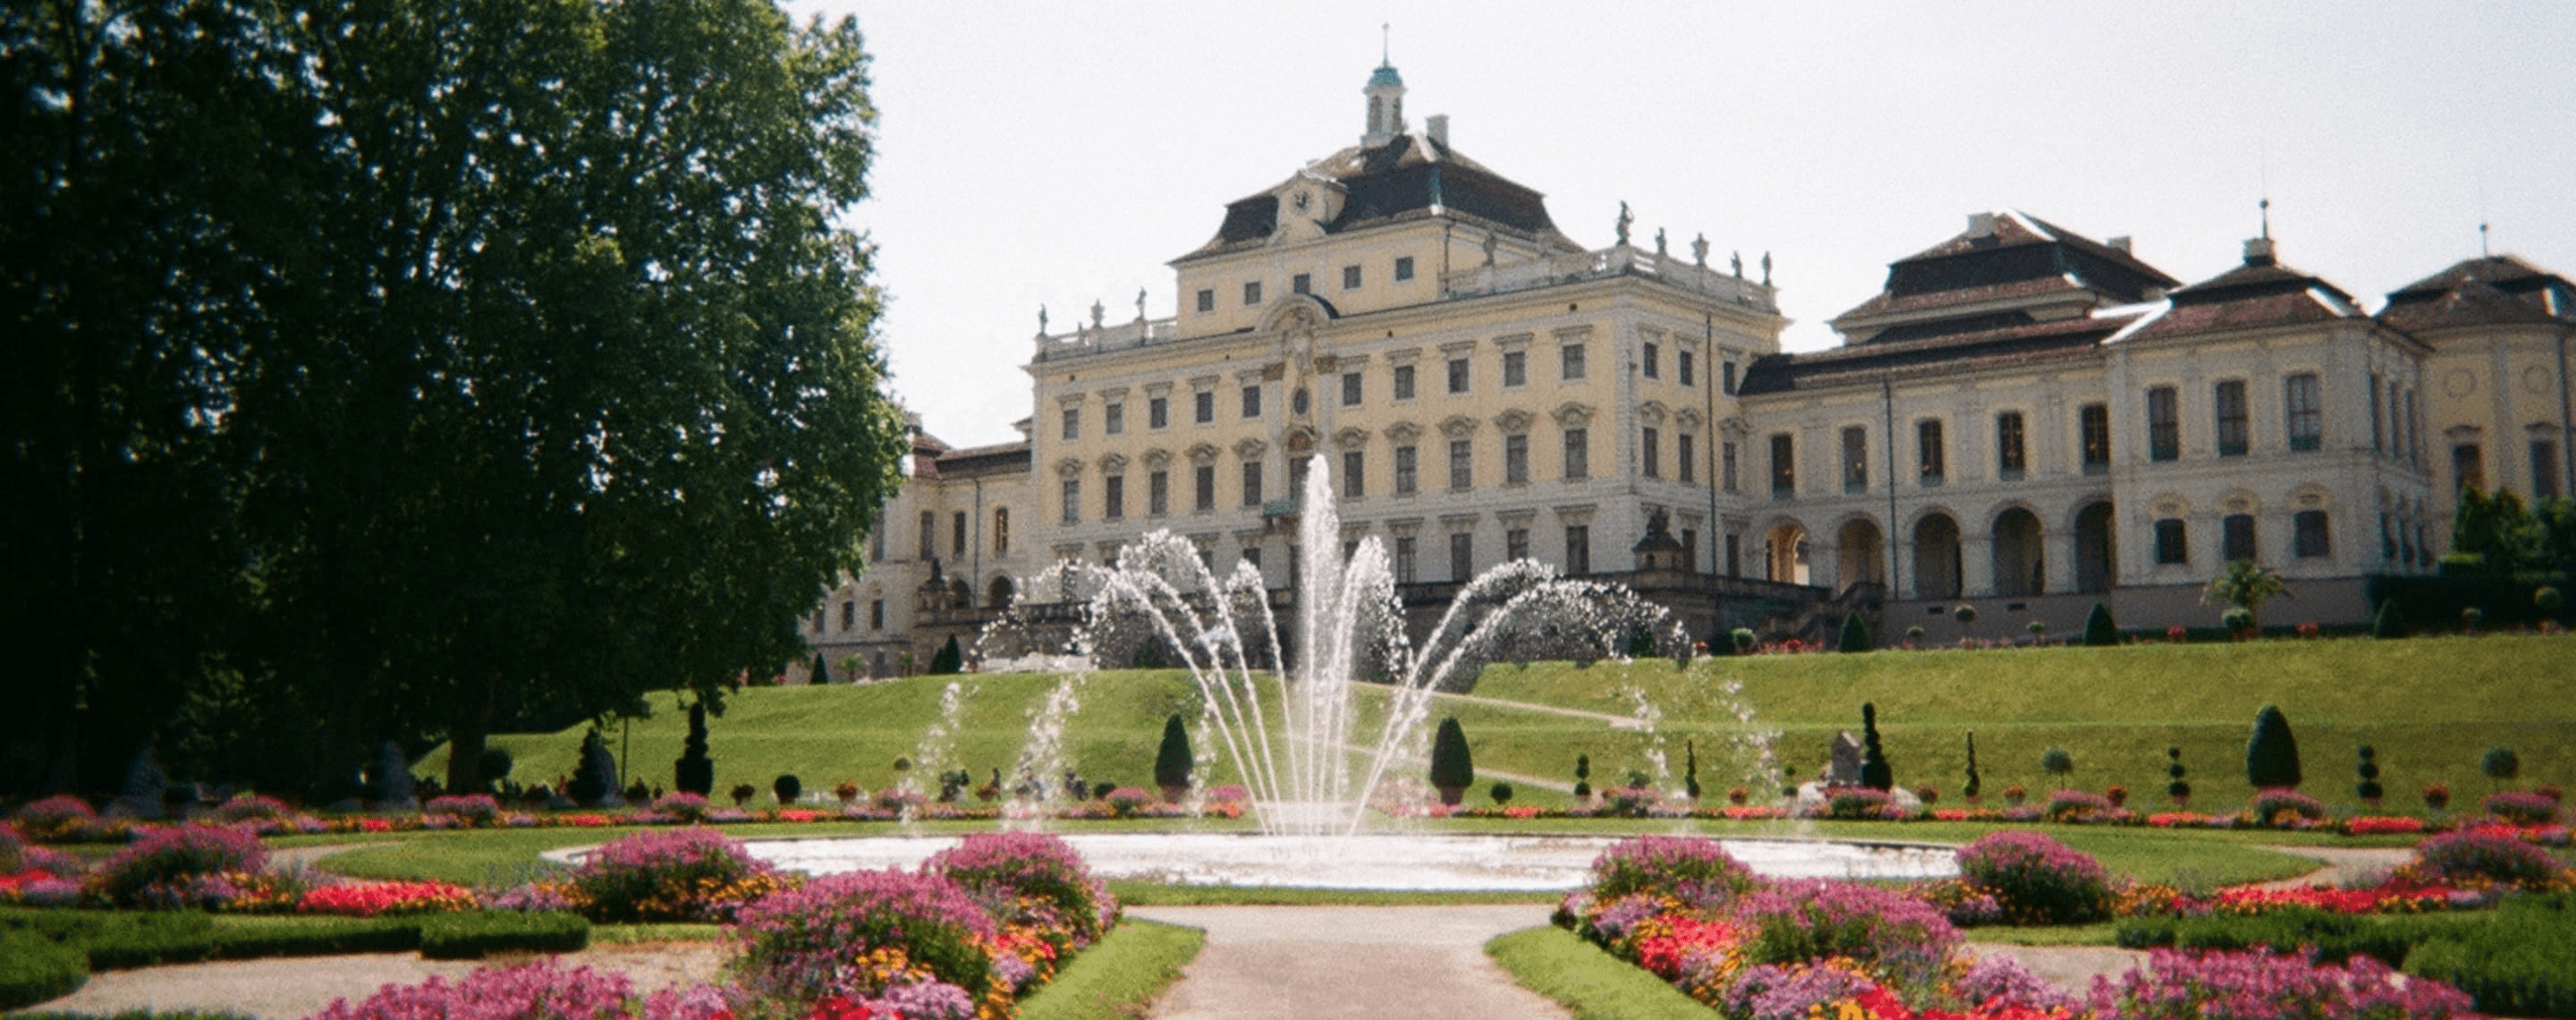 Residenzschloss in Ludwigsburg mit Springbrunnen